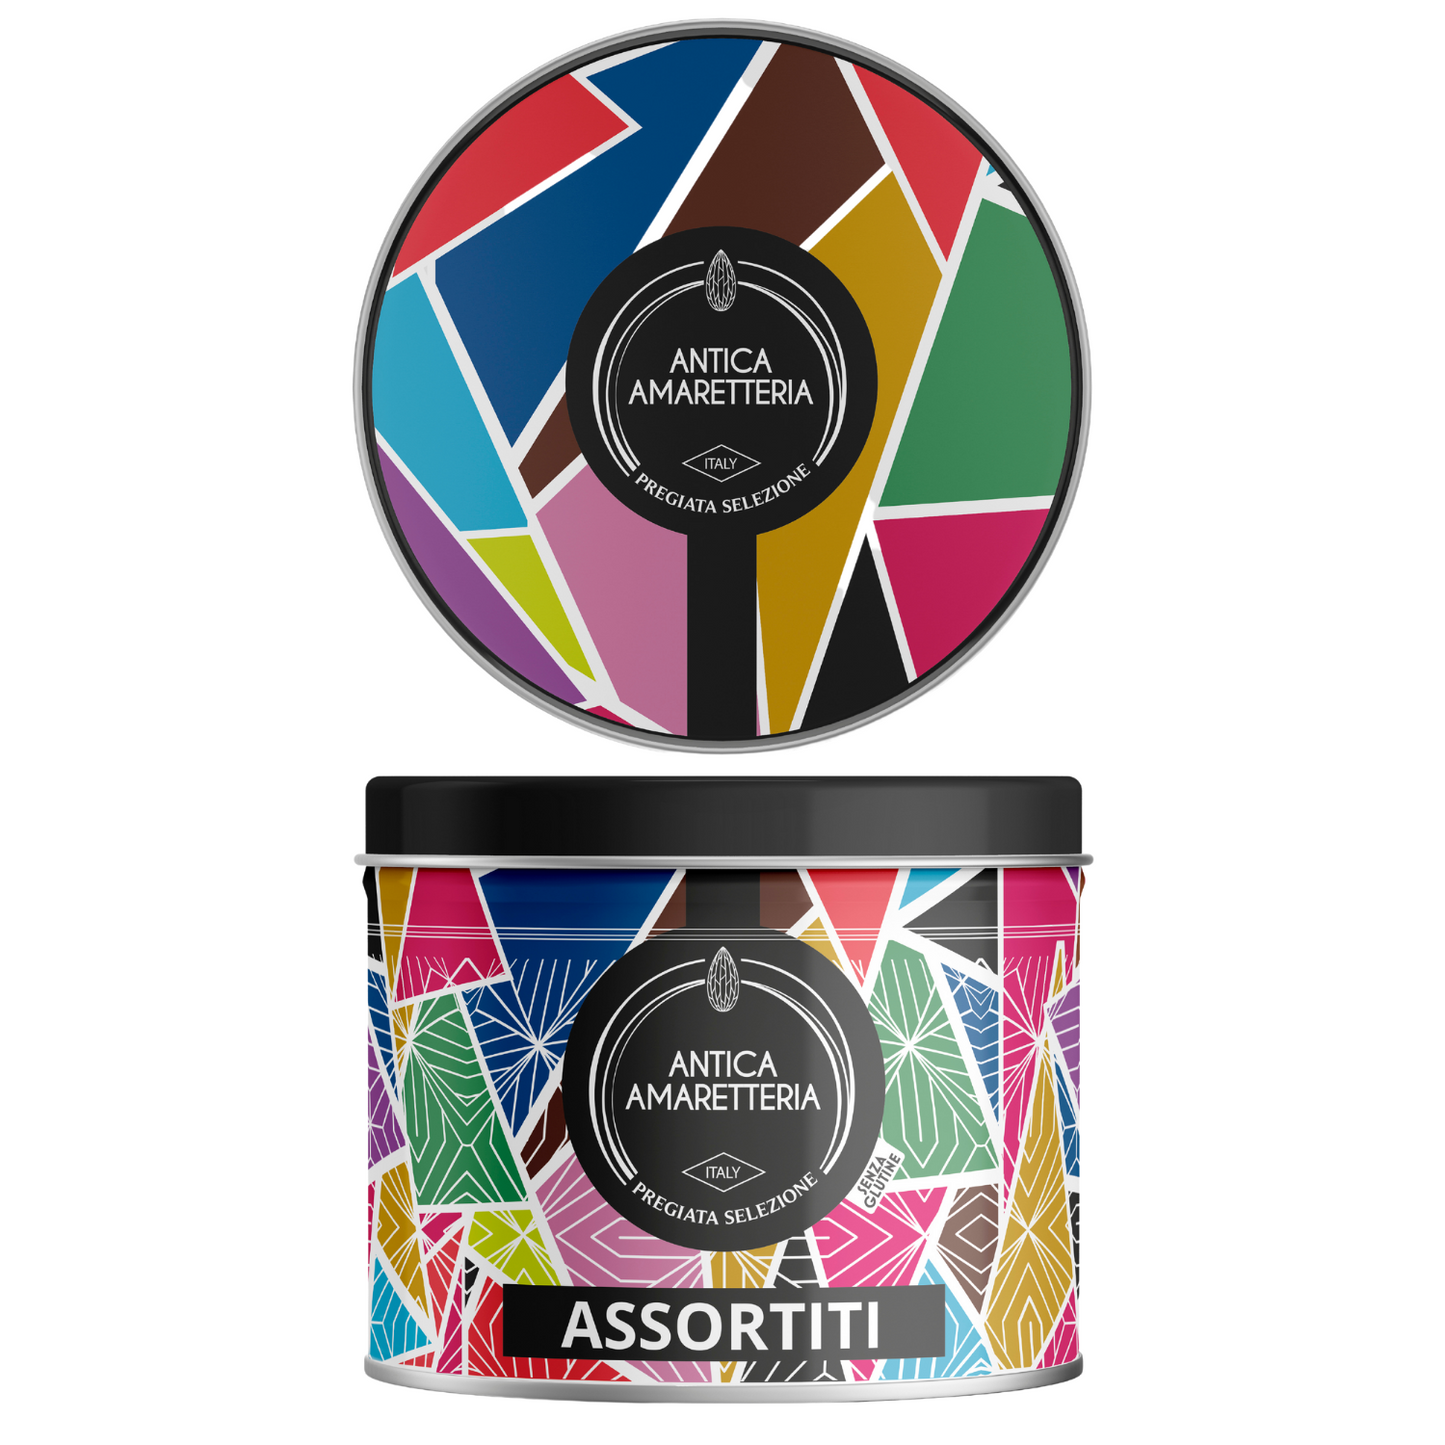 Amaretti Morbidi Assortiti - GIFT BOX - 320gr